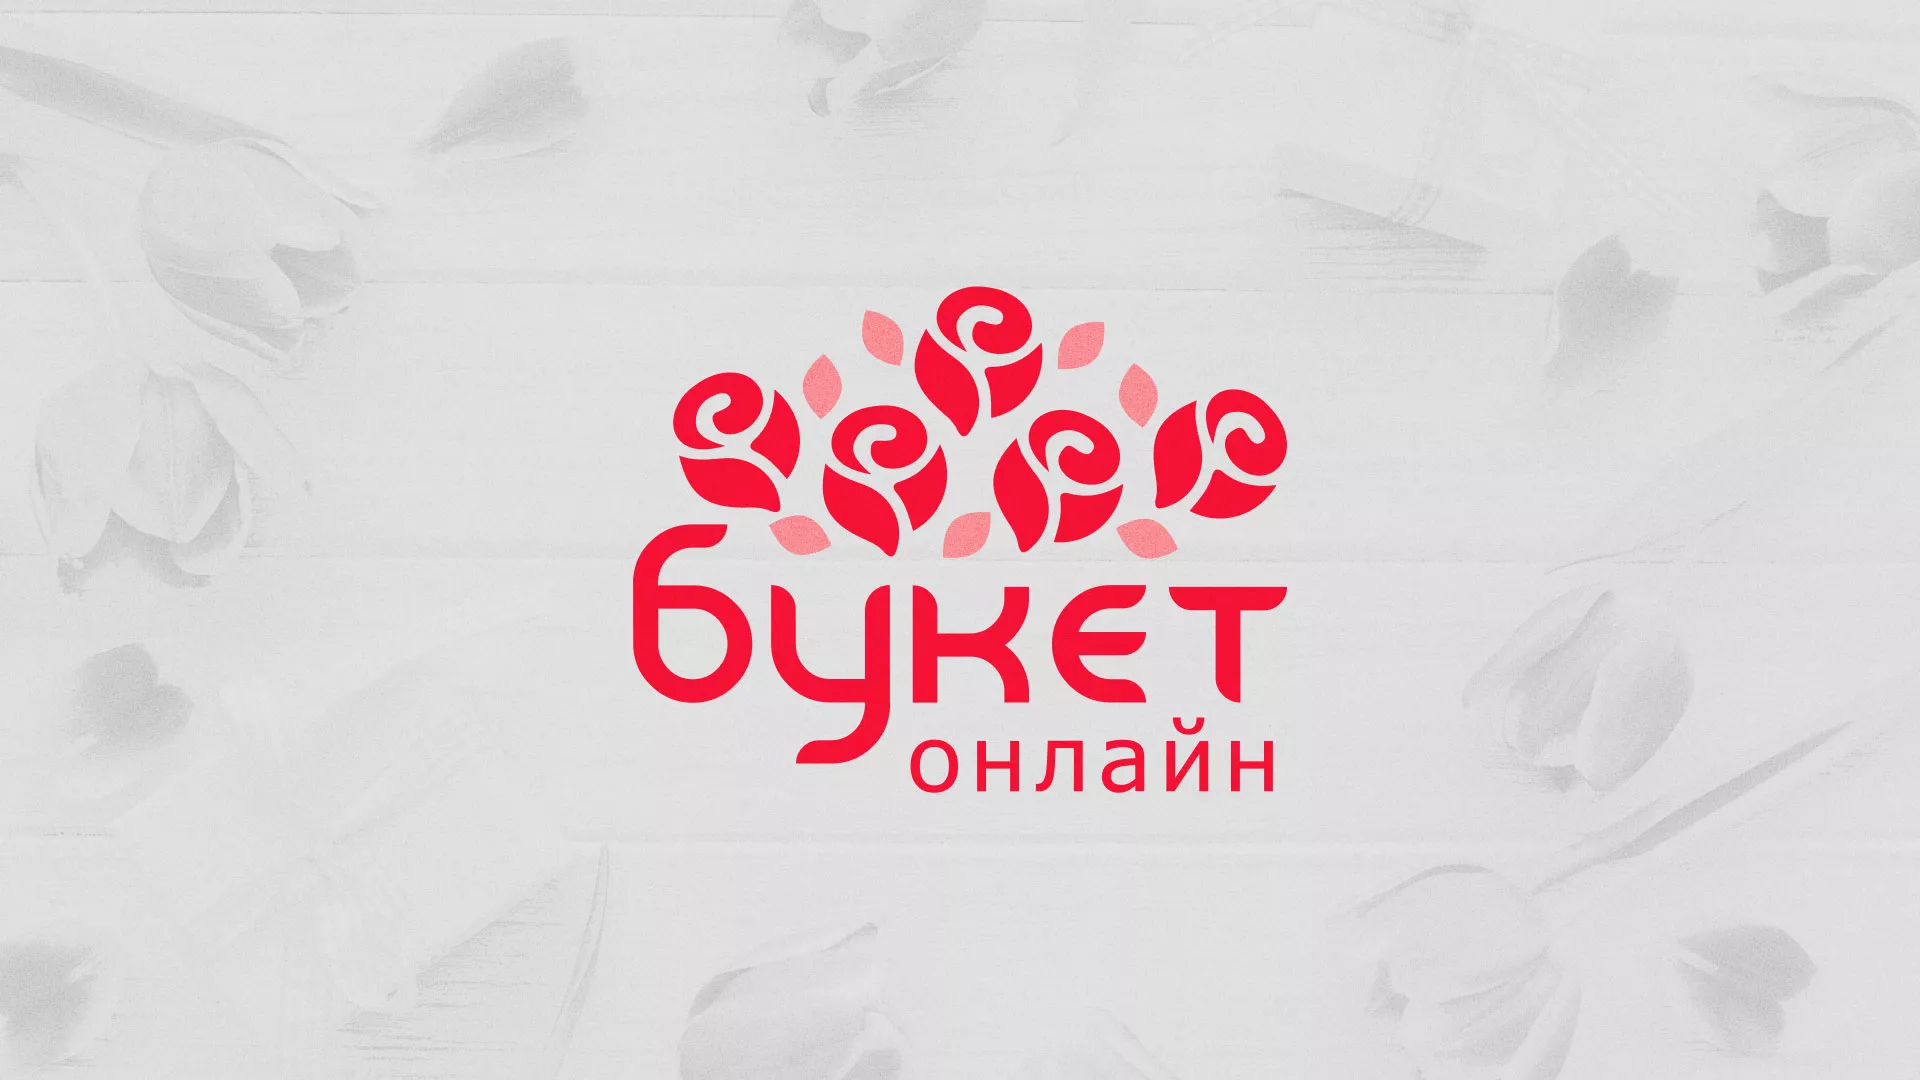 Создание интернет-магазина «Букет-онлайн» по цветам в Симферополе